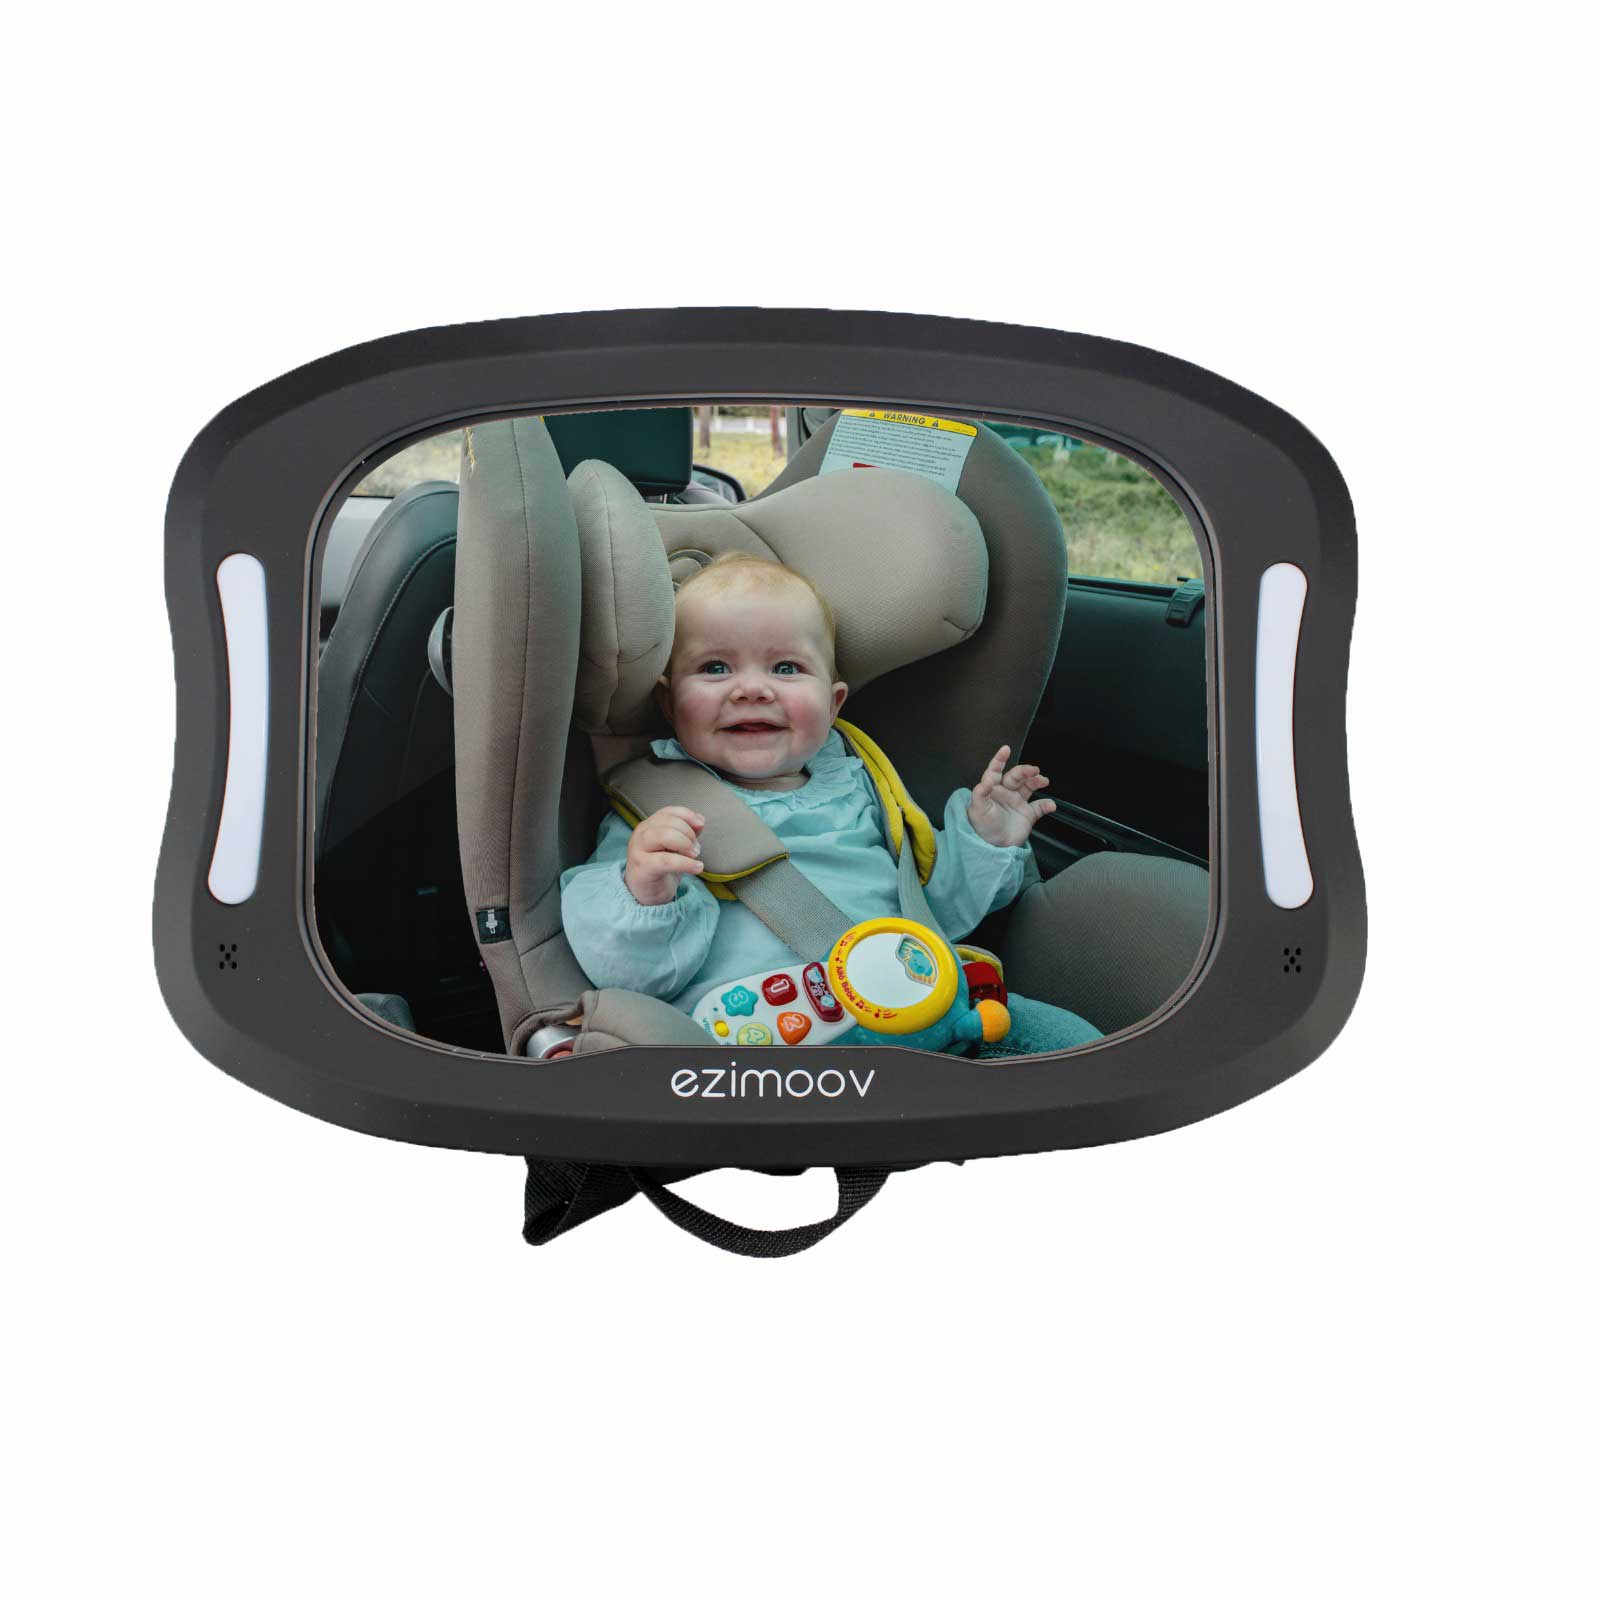 ezimoov-mirror-led-car-baby